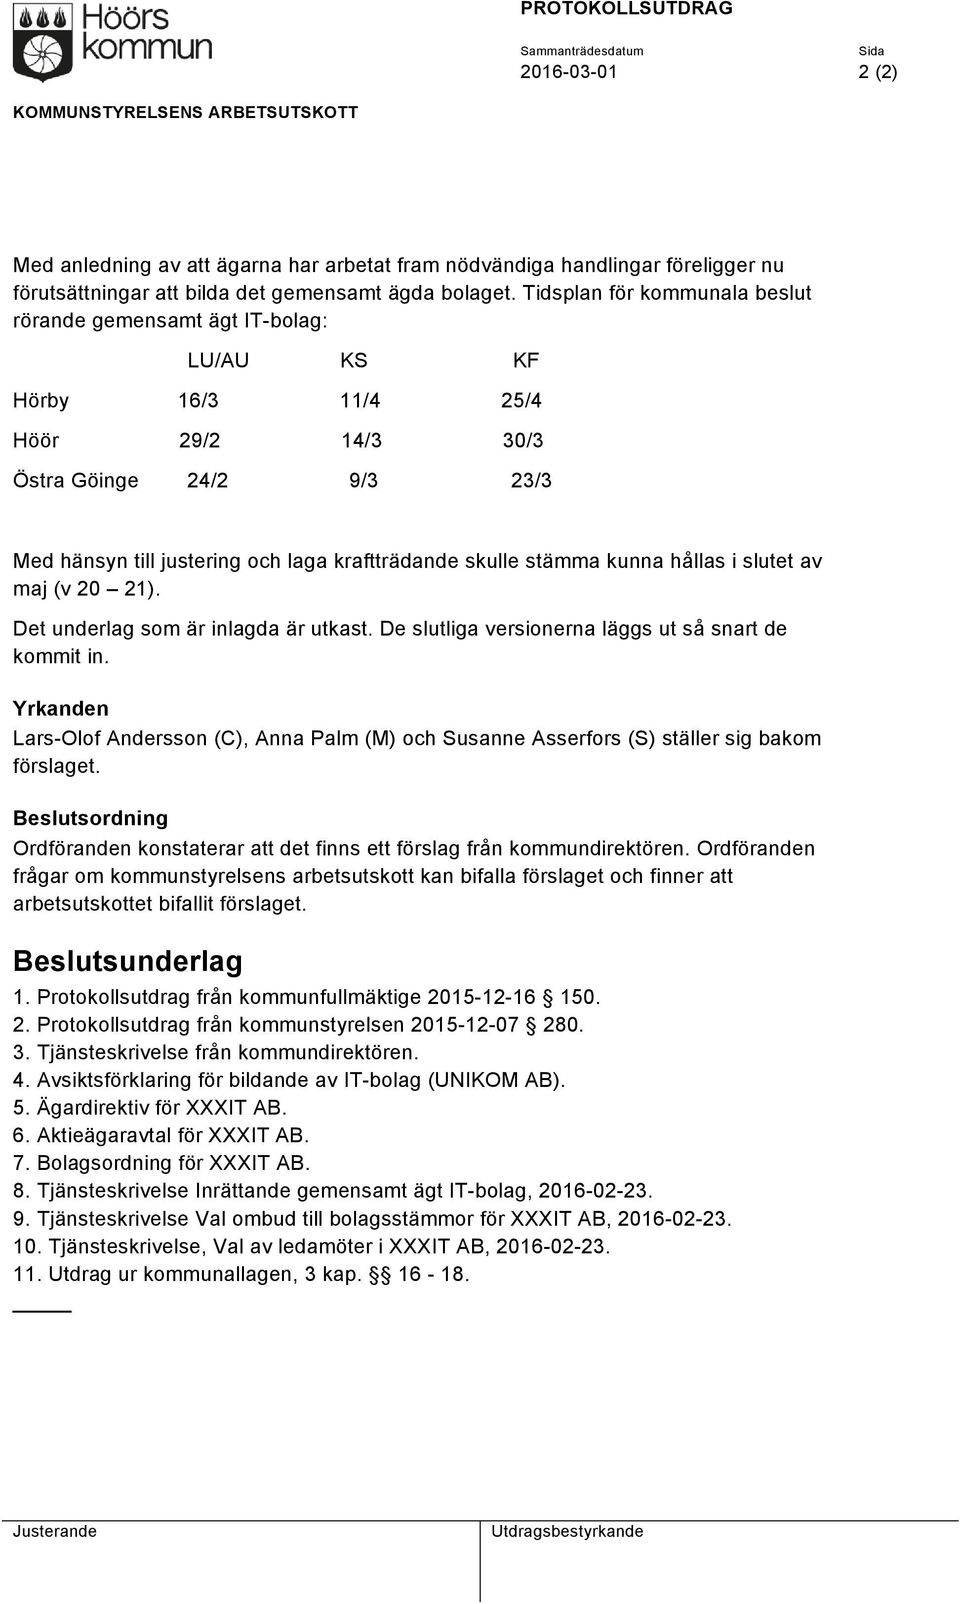 Tidsplan för kommunala beslut rörande gemensamt ägt IT-bolag: LU/AU KS KF Hörby 16/3 11/4 25/4 Höör 29/2 14/3 30/3 Östra Göinge 24/2 9/3 23/3 Med hänsyn till justering och laga kraftträdande skulle